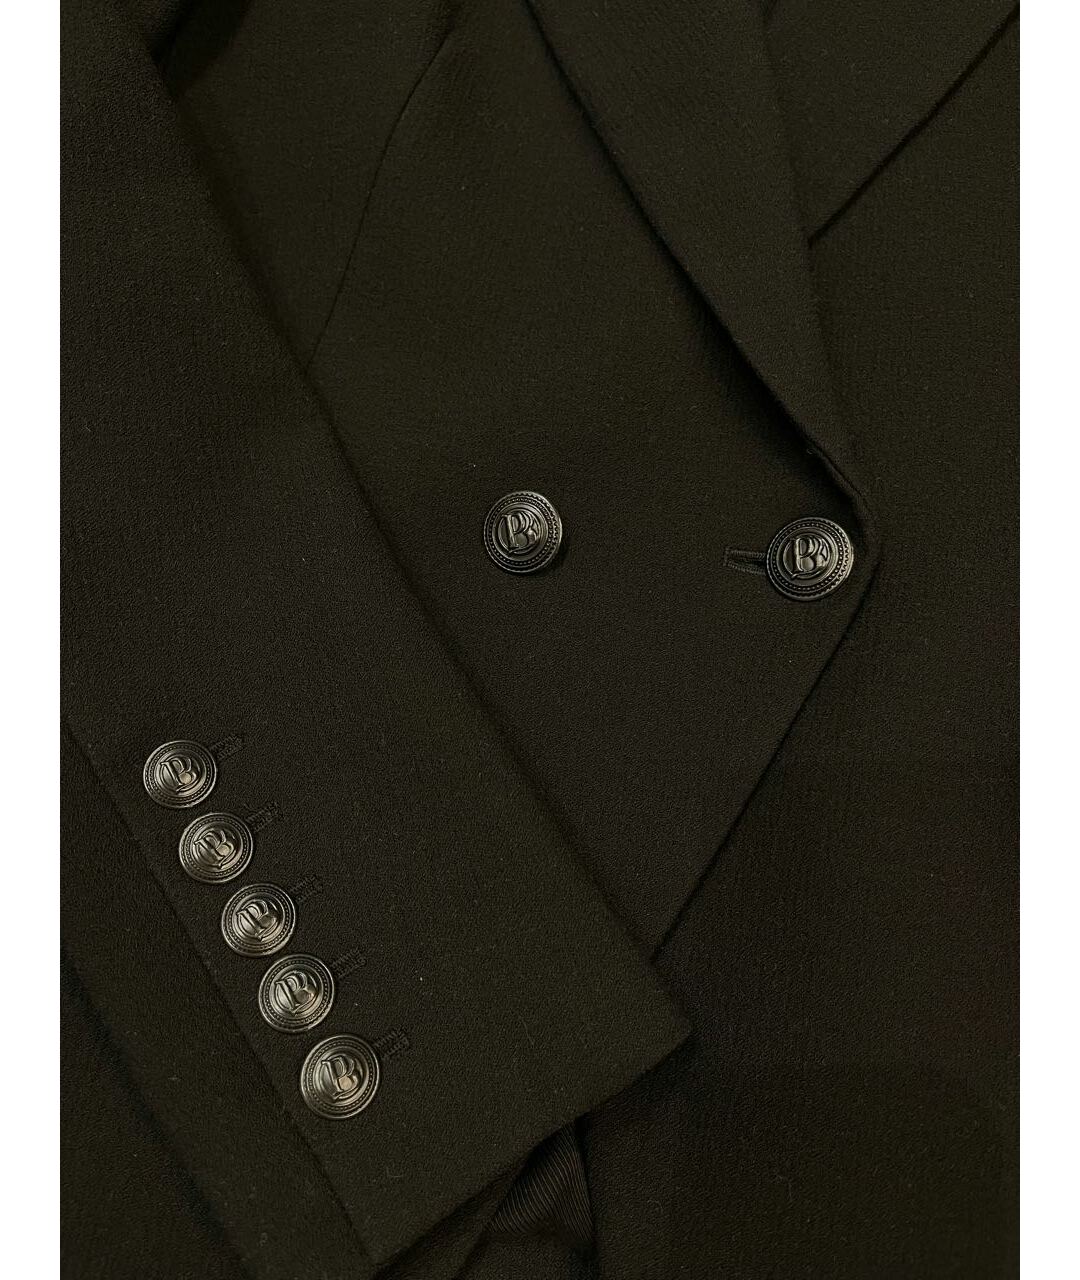 PIERRE BALMAIN Черный вискозный жакет/пиджак, фото 3